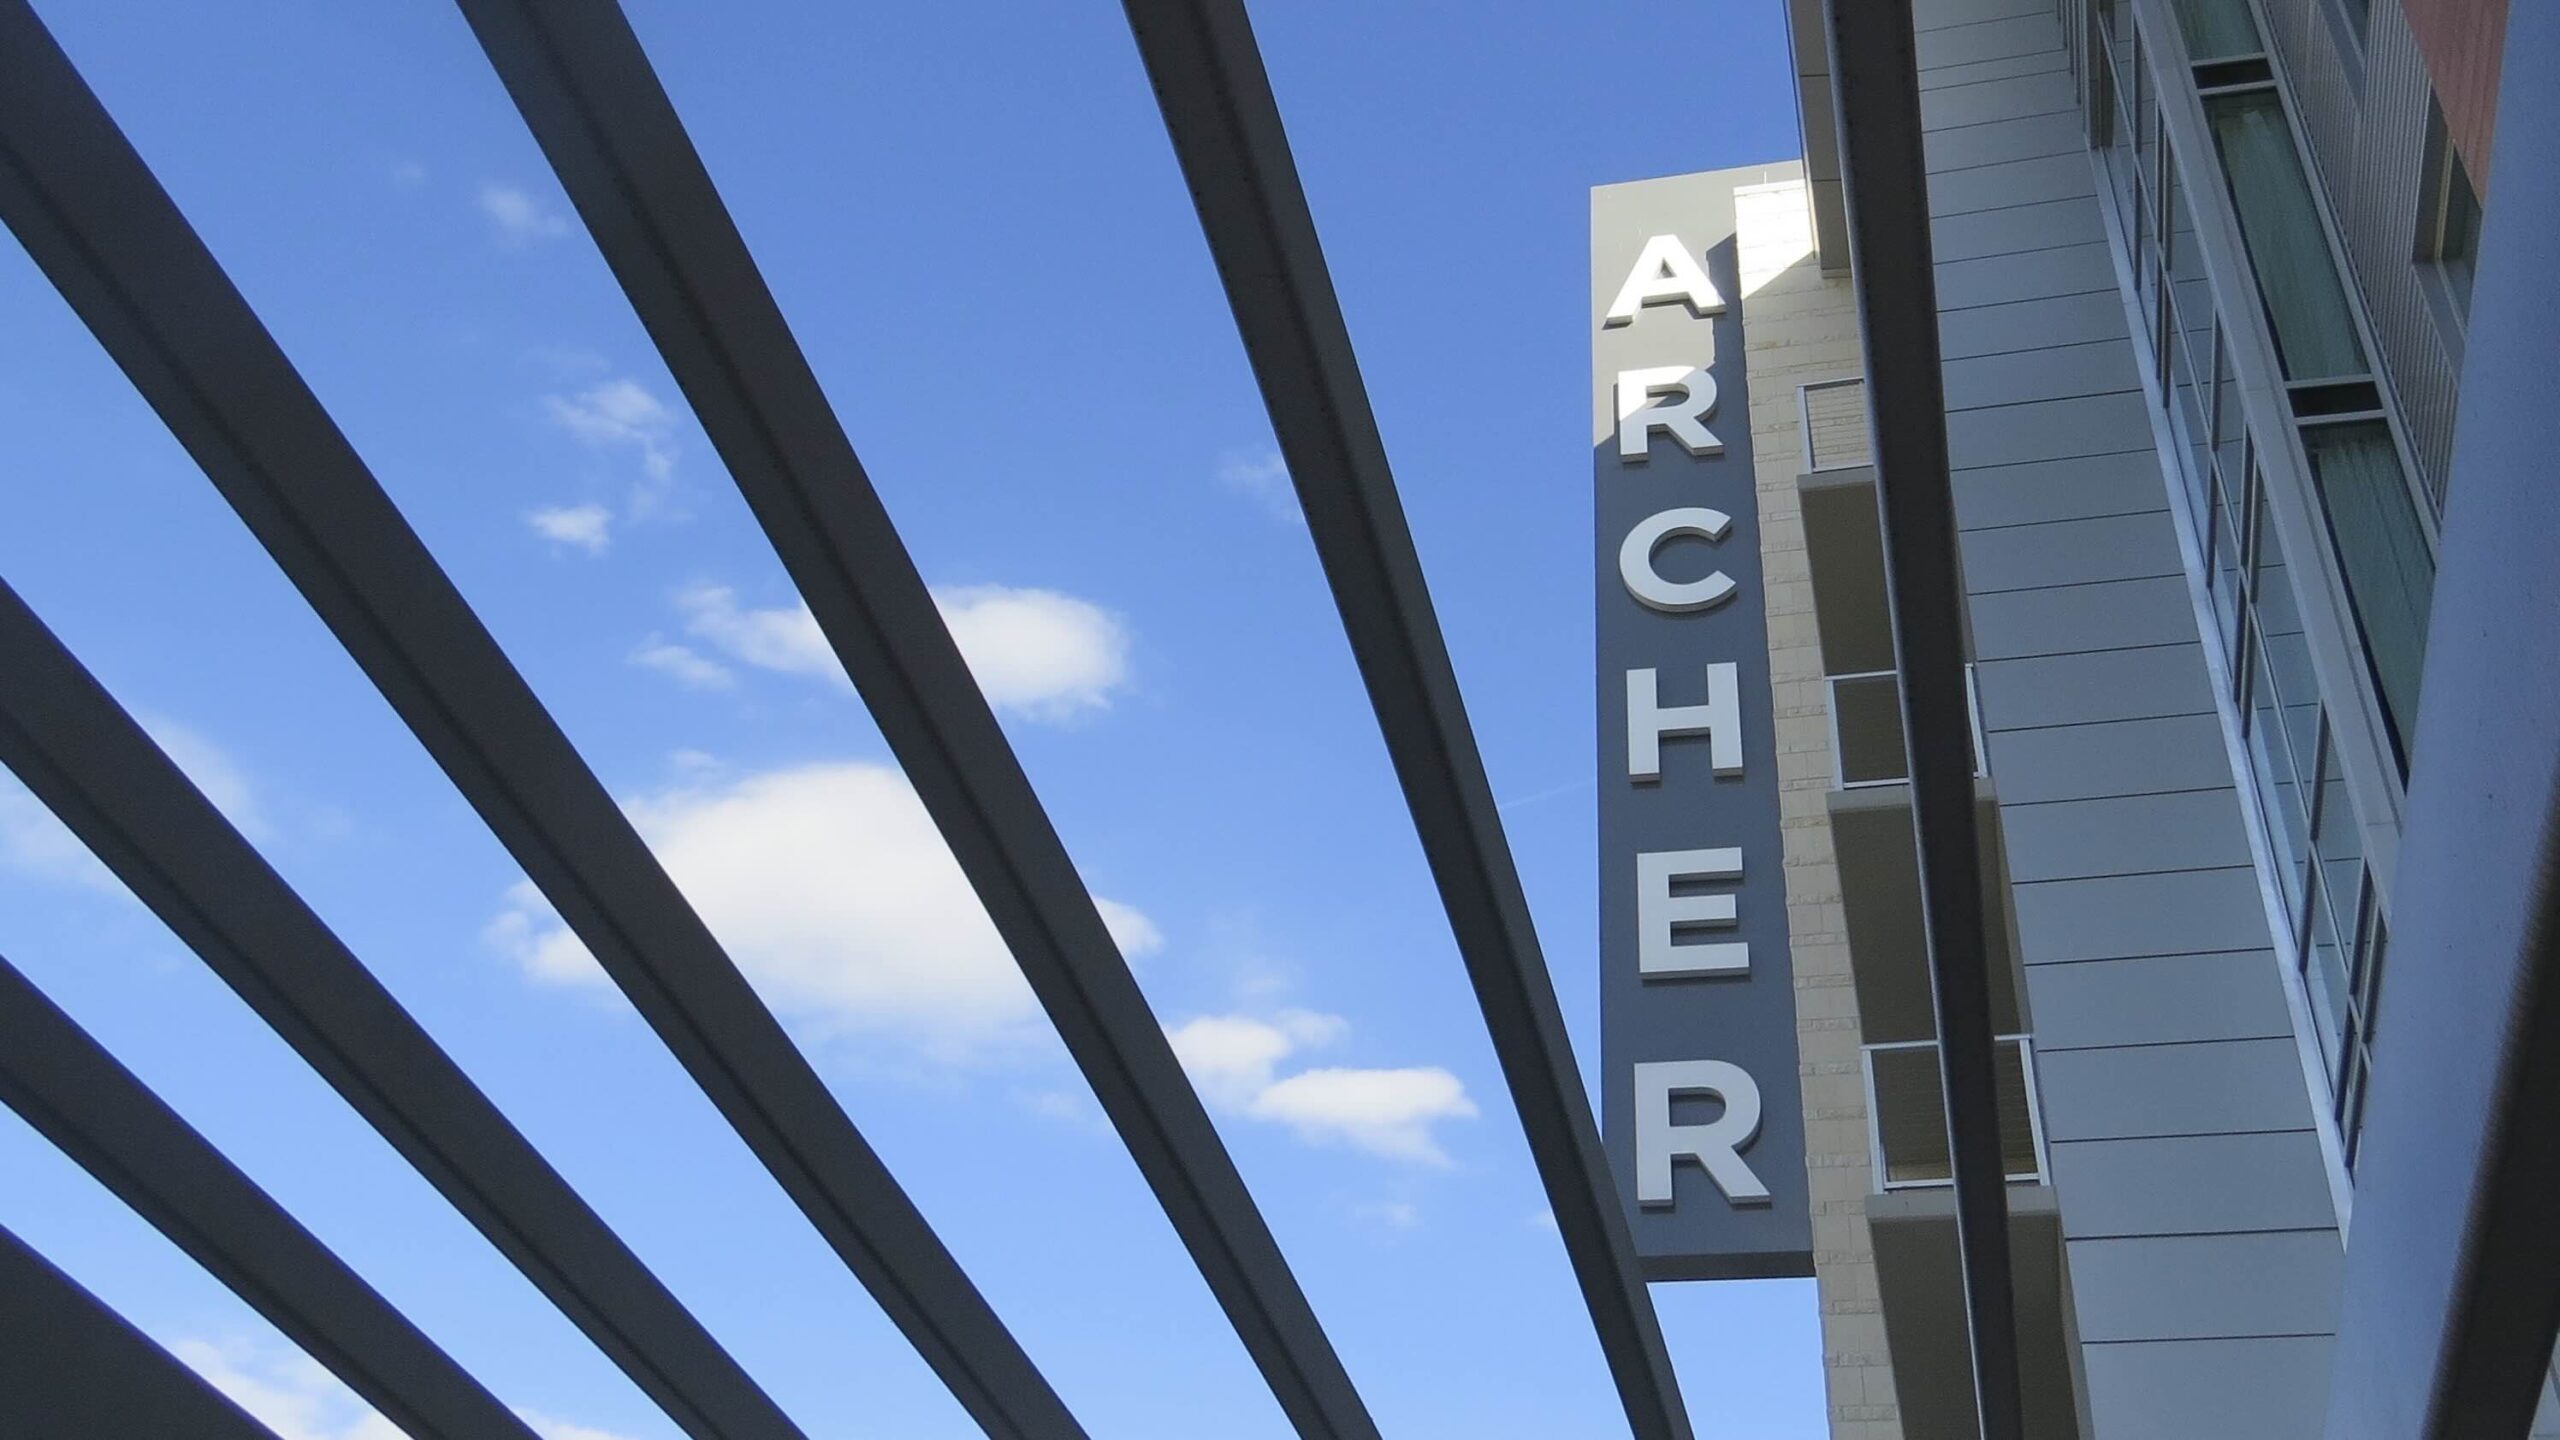 Archer Hotel Austin exterior